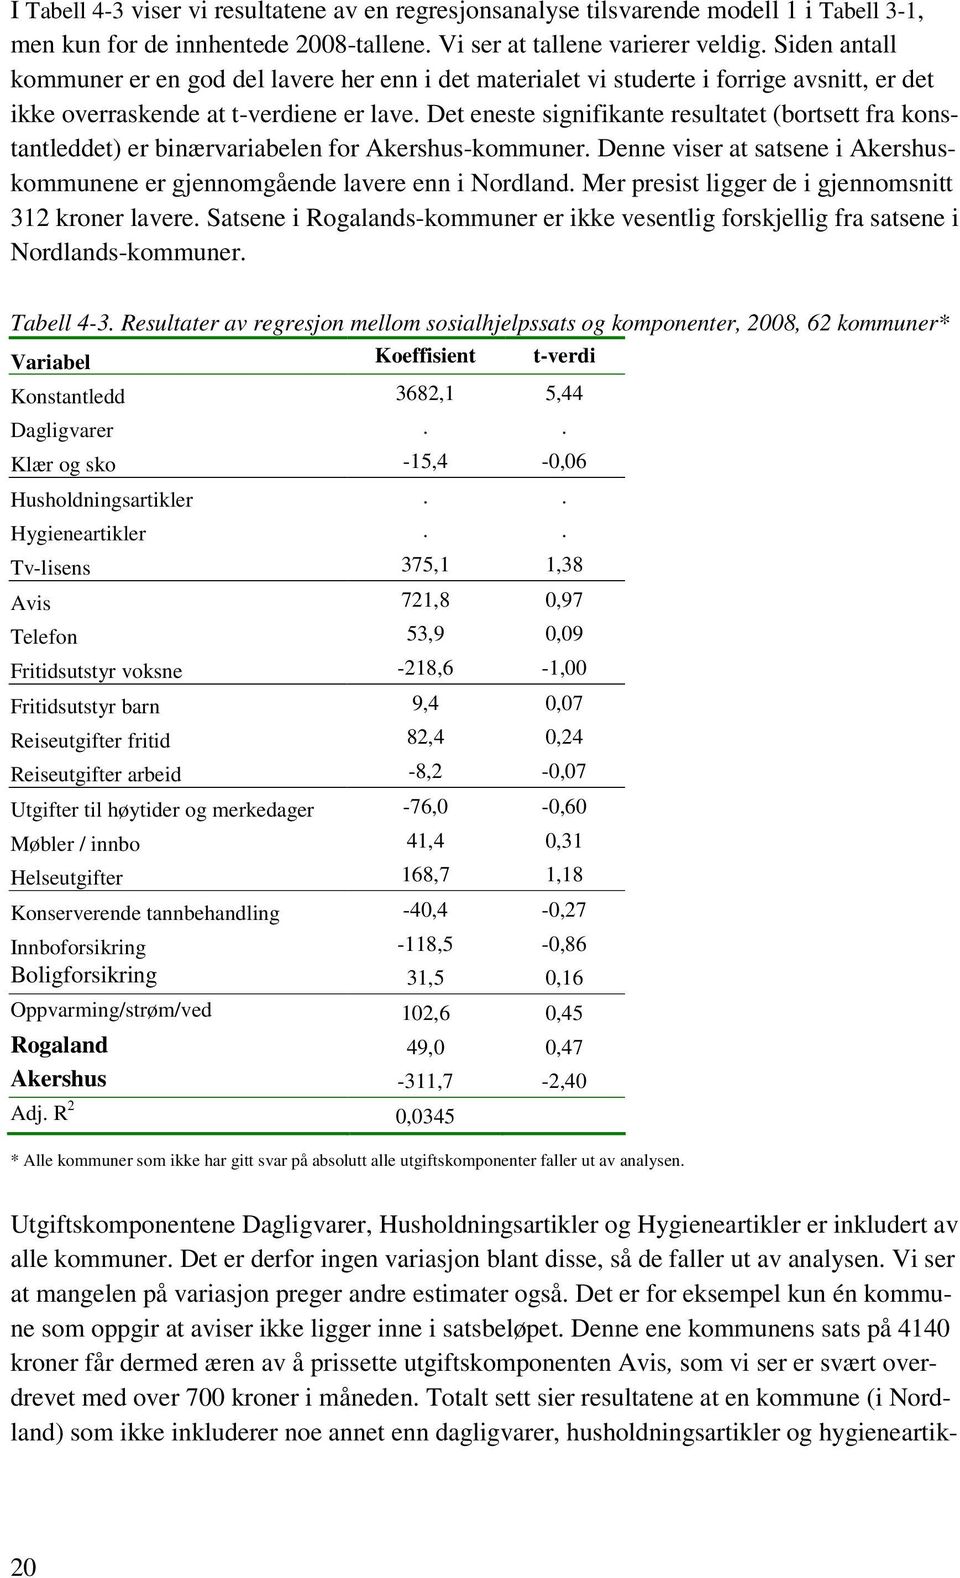 Det eneste signifikante resultatet (bortsett fra konstantleddet) er binærvariabelen for Akershus-kommuner. Denne viser at satsene i Akershuskommunene er gjennomgående lavere enn i Nordland.